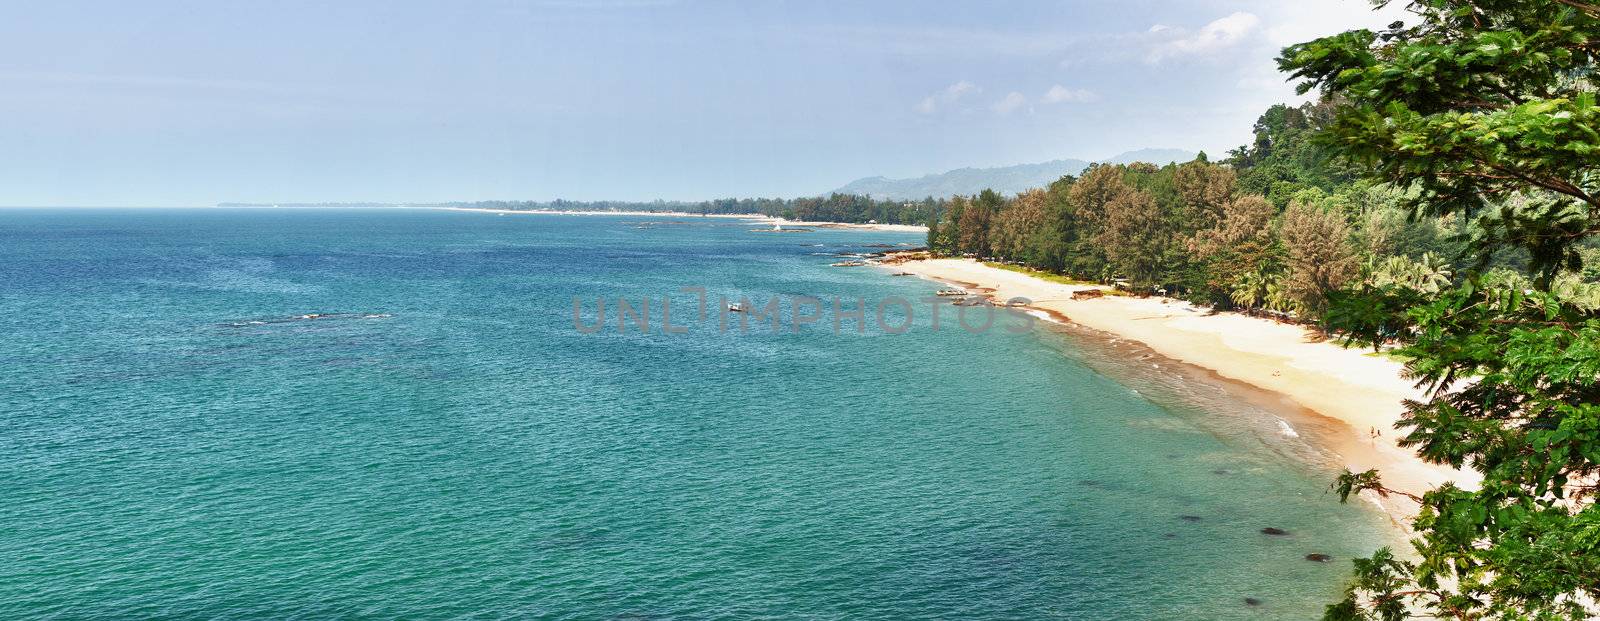 Panoramic view of tropical beach - Thailand, Phuket